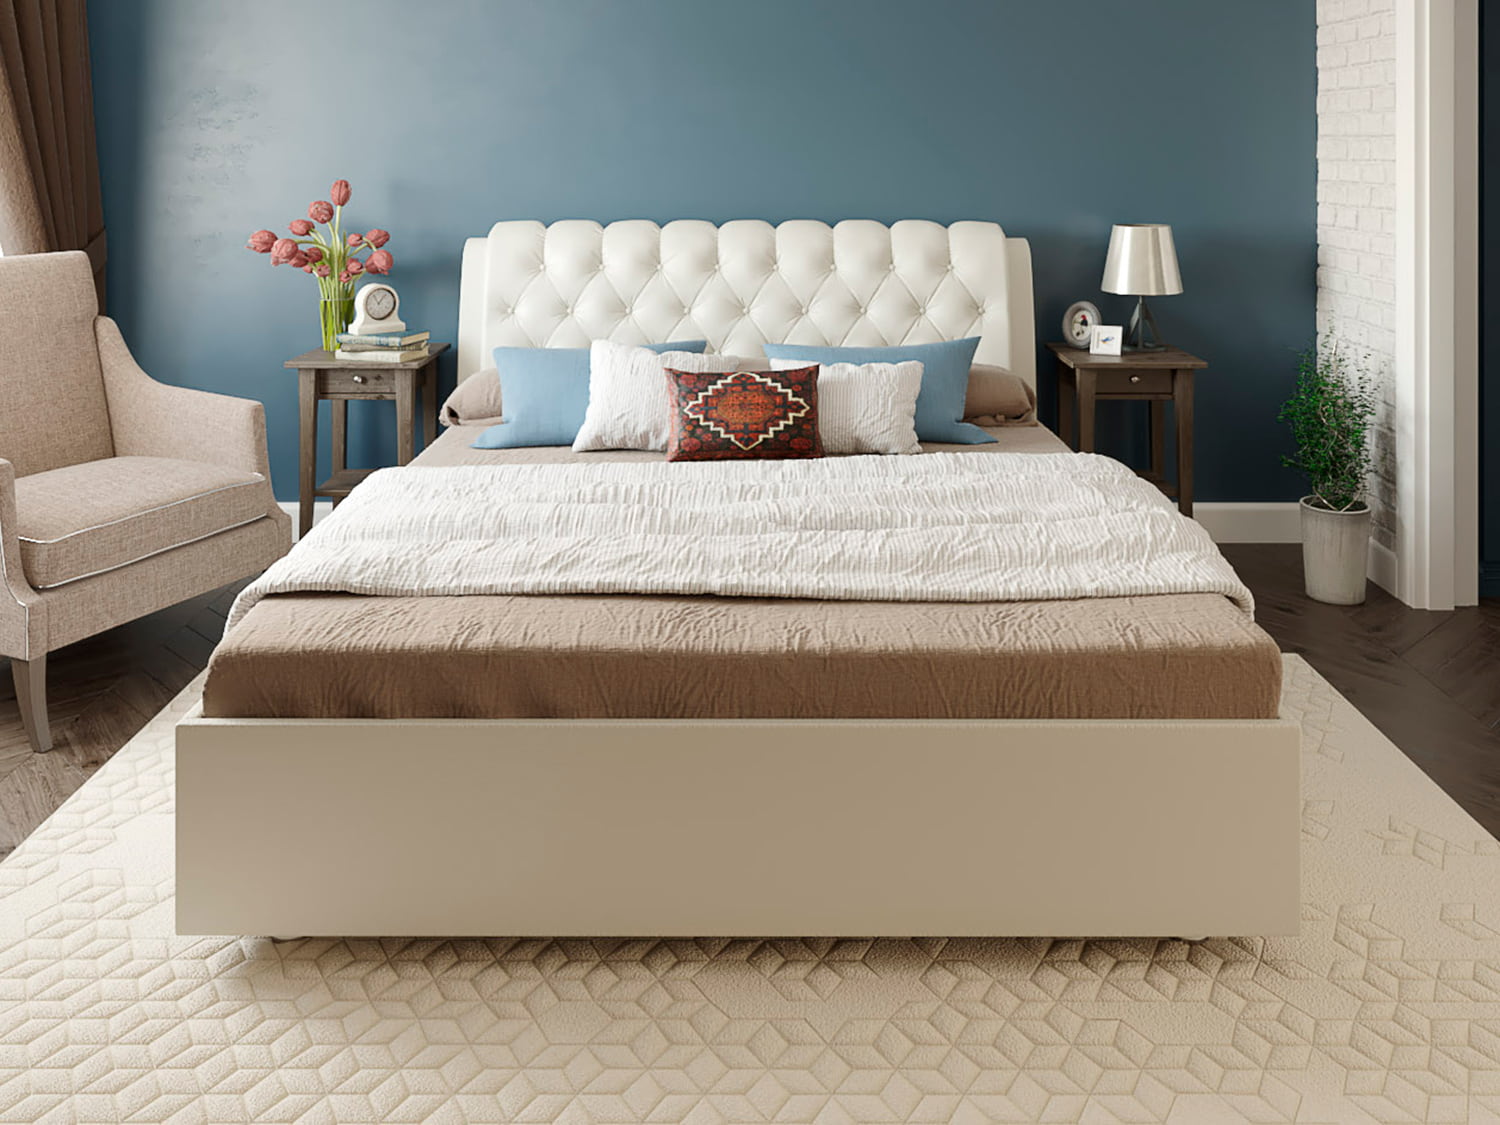 Кровать Solermo - кровать с мягкой спинкой и подъемным механизмом